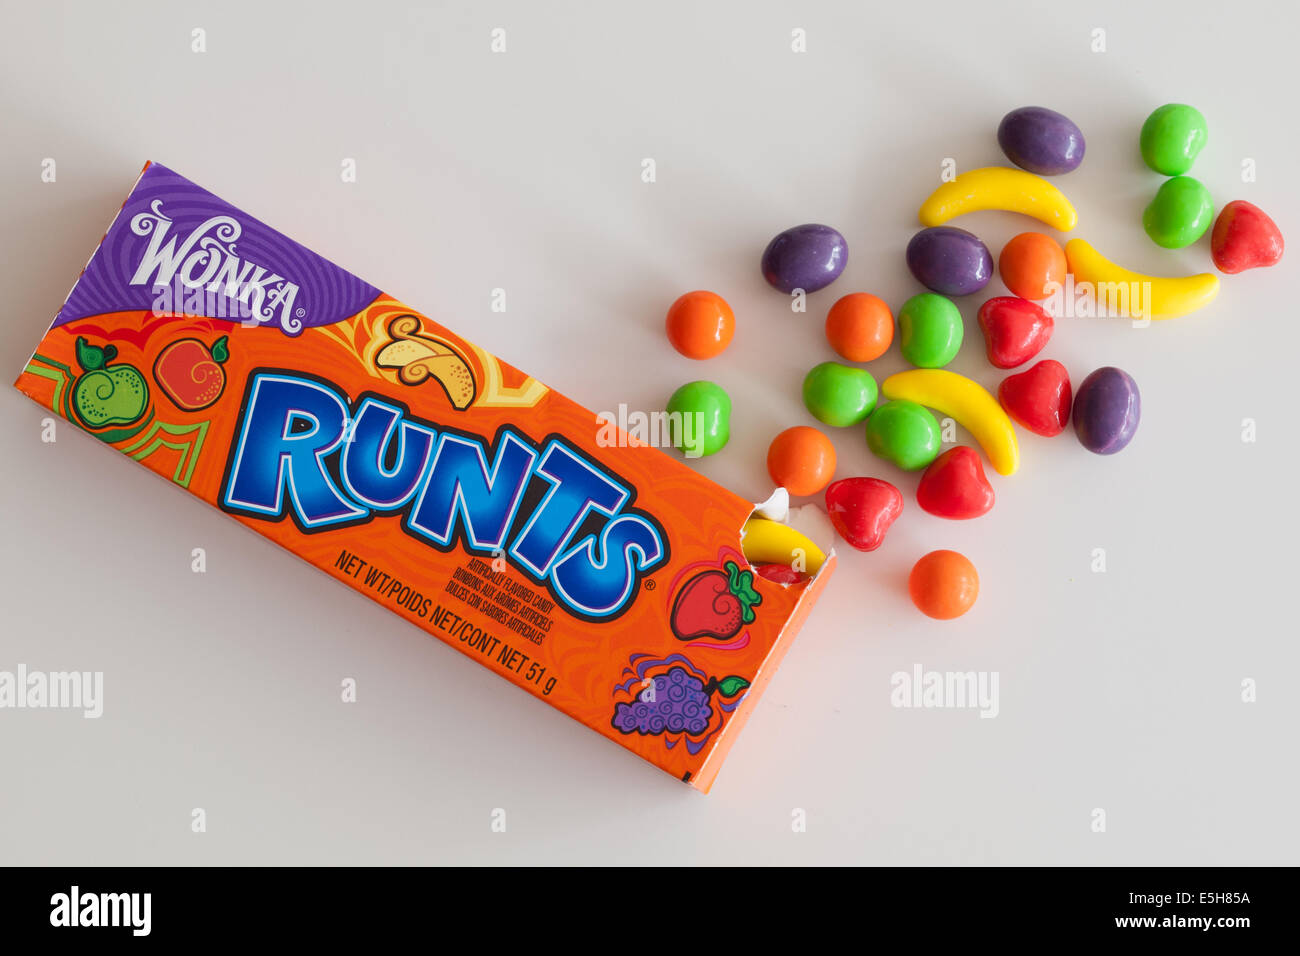 Una scatola di Runts (o frutta) Runts candy. Queste caramelle dure sono venduti da Nestlé sotto il Willy Wonka Candy brand aziendale. Foto Stock